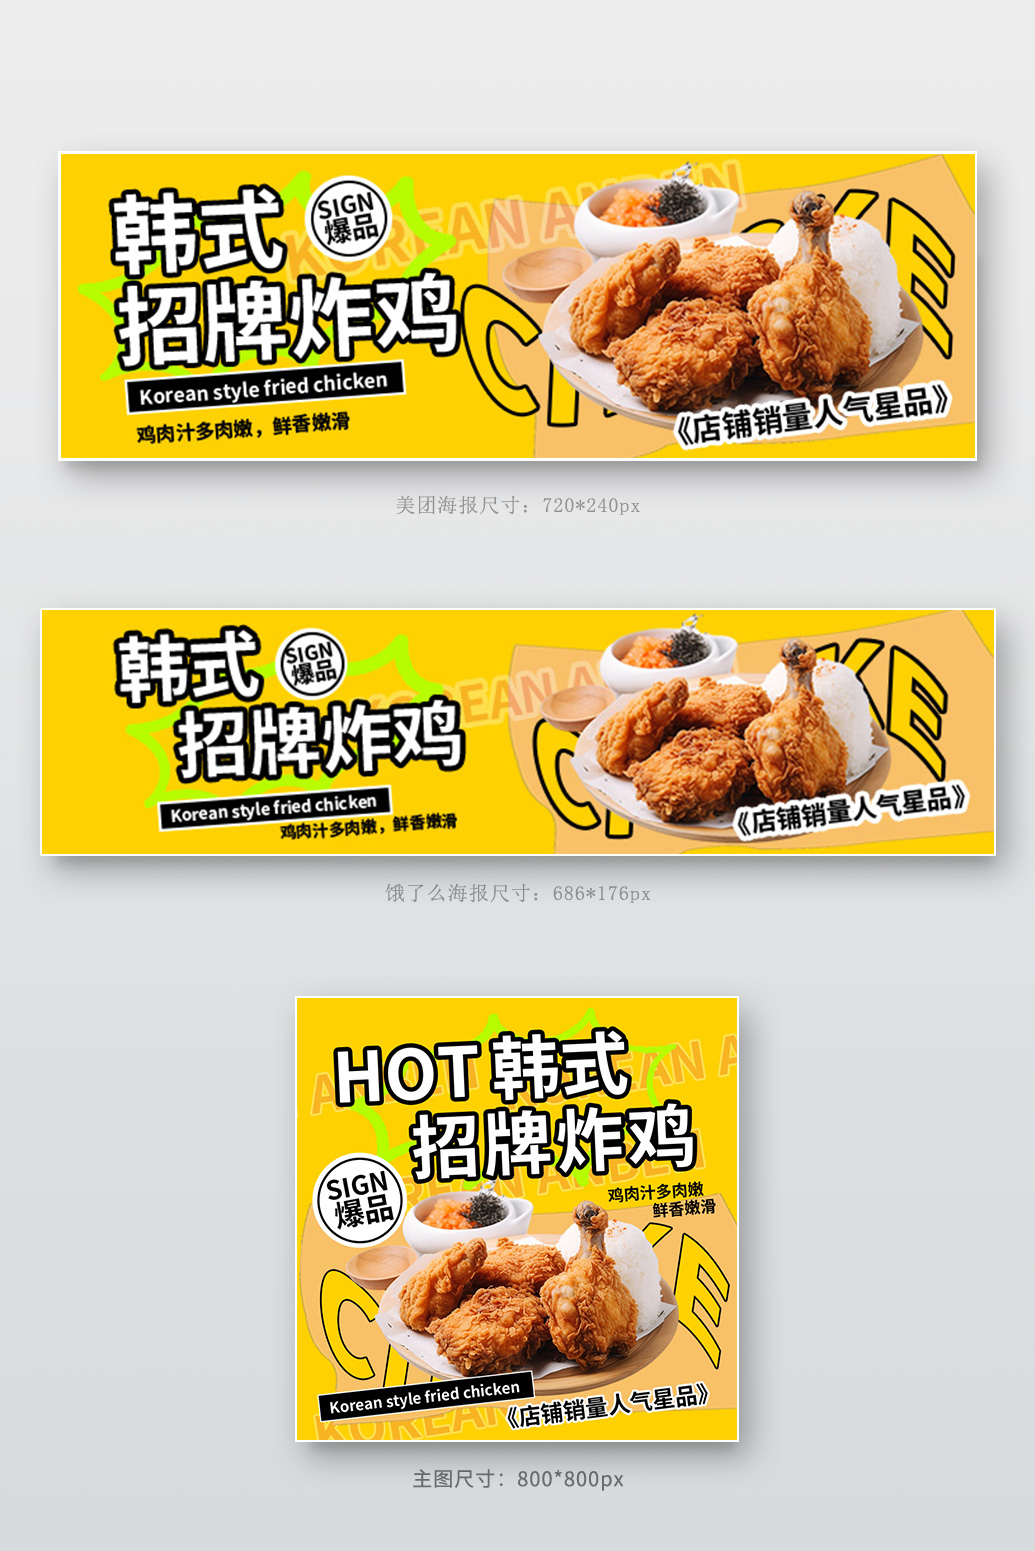 韩式炸鸡美食外卖黄色电商外卖店招长图模版图片